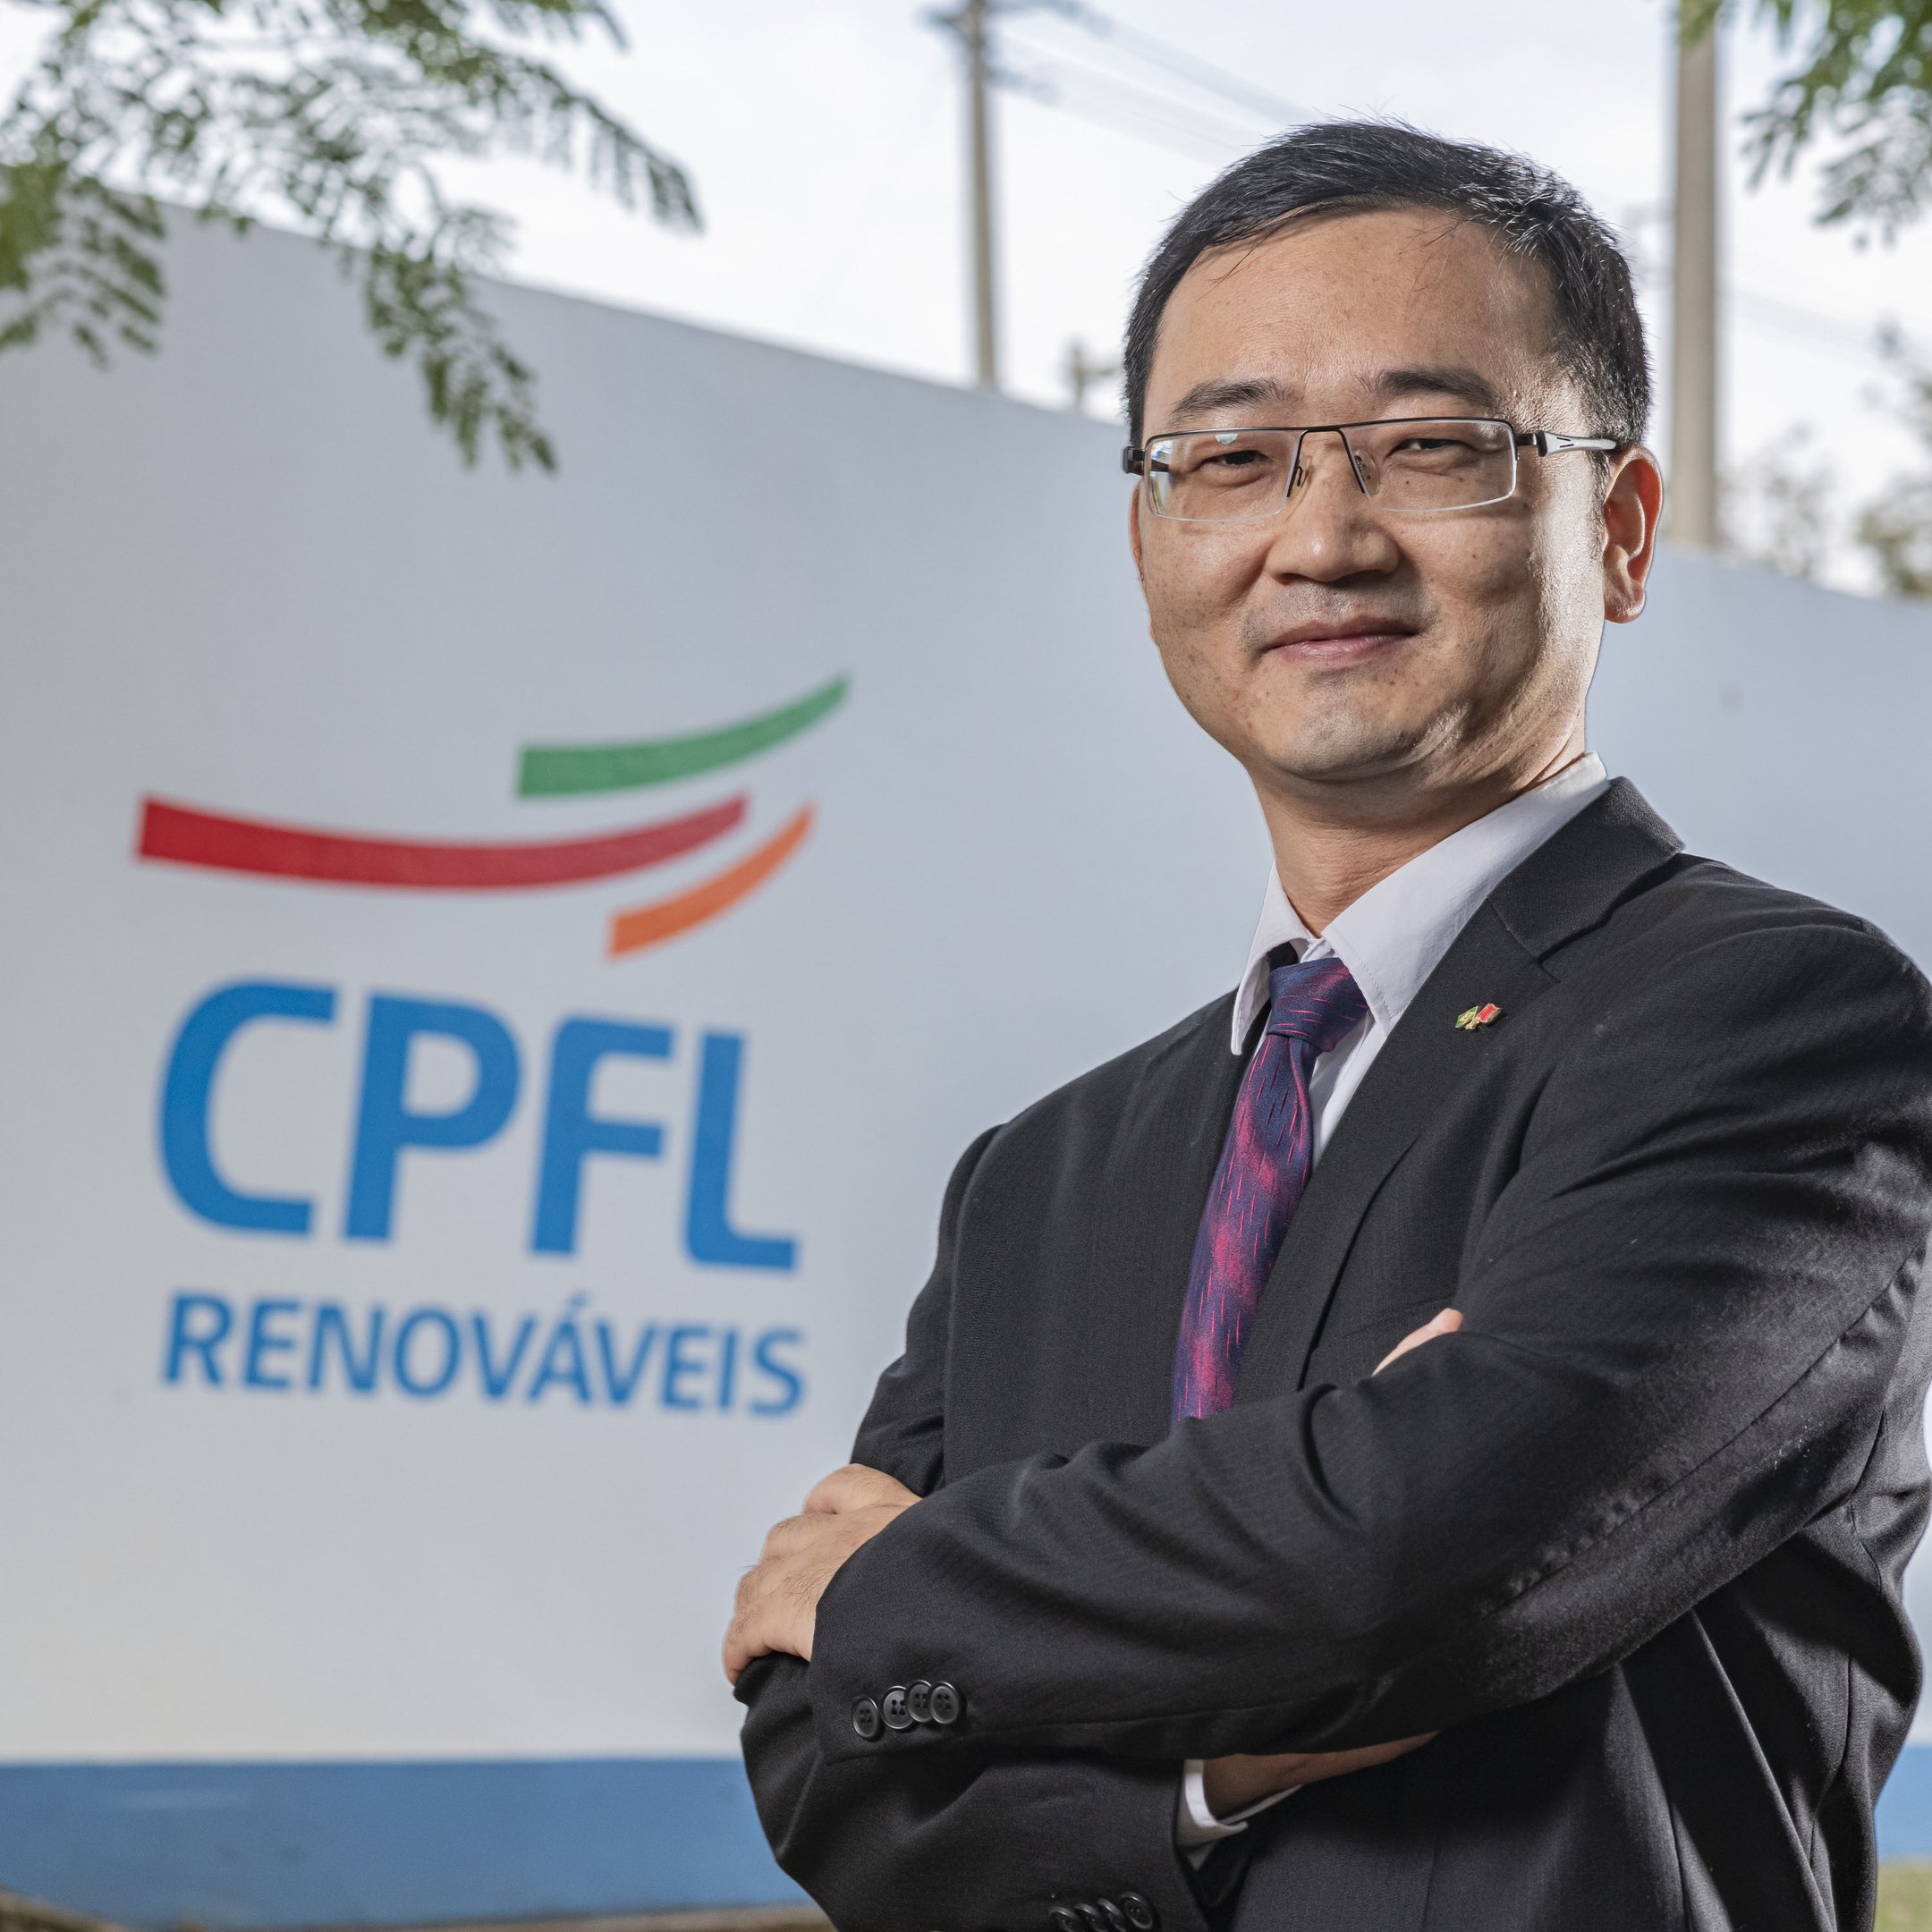 XinJian Chen, diretor-presidente da CPFL Renováveis: “A iniciativa tem um significado importante para contribuir com o bem-estar da população local e levar dignidade e segurança hídrica para os moradores”